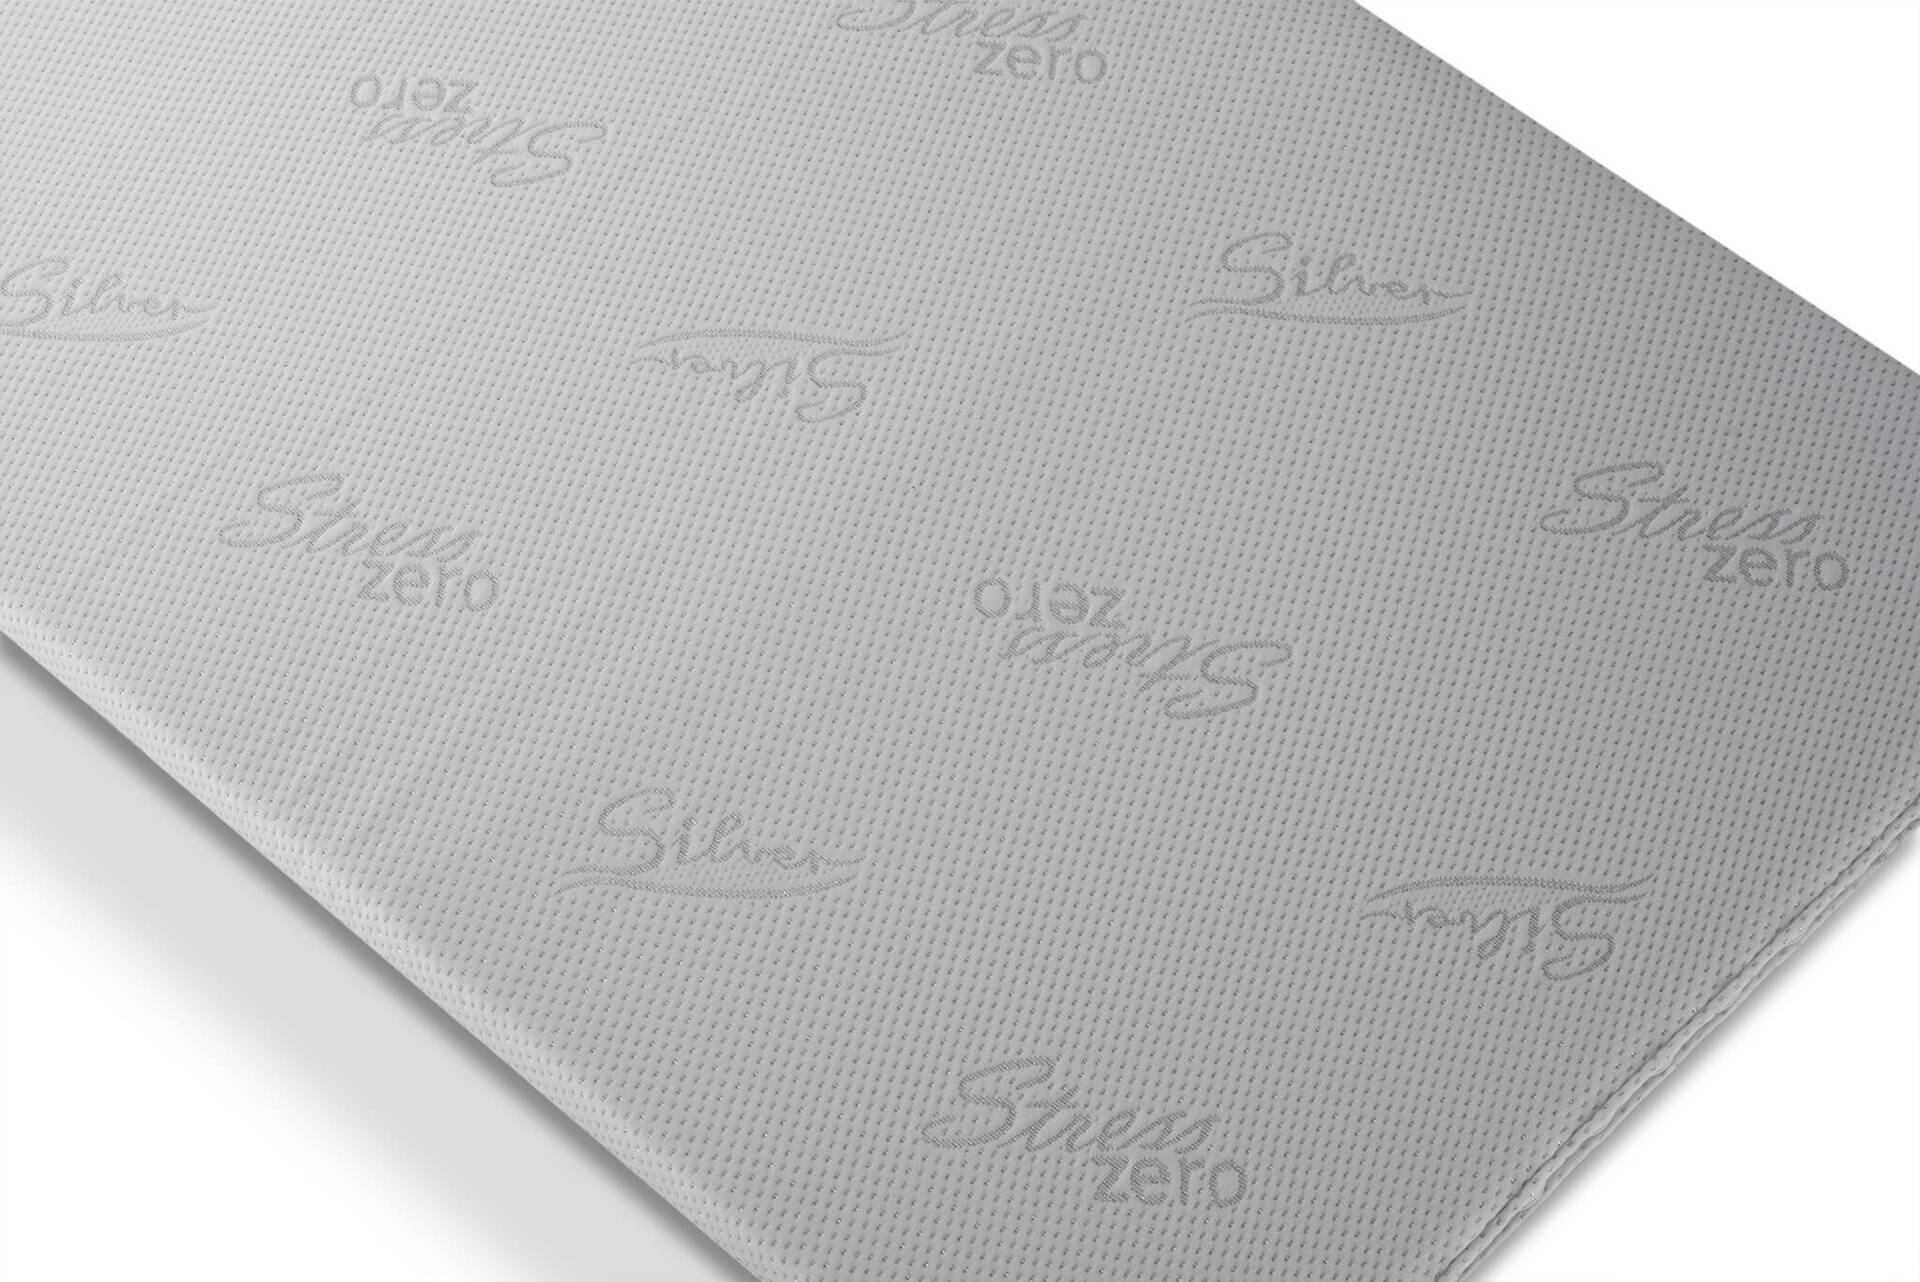 Топ матрак Silver Comfort 82/190/6 см, Sleepy - РАЗОПАКОВАН